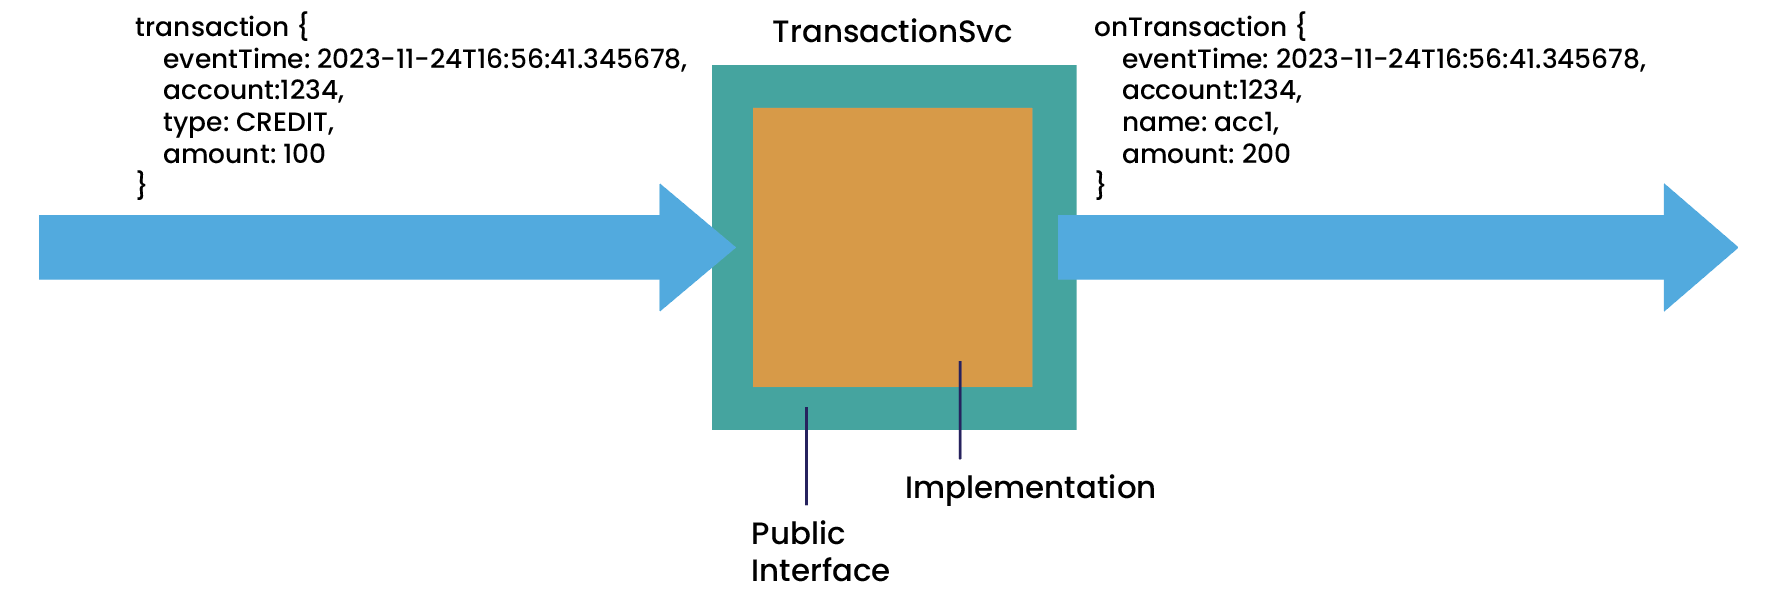 Transaction service depiction